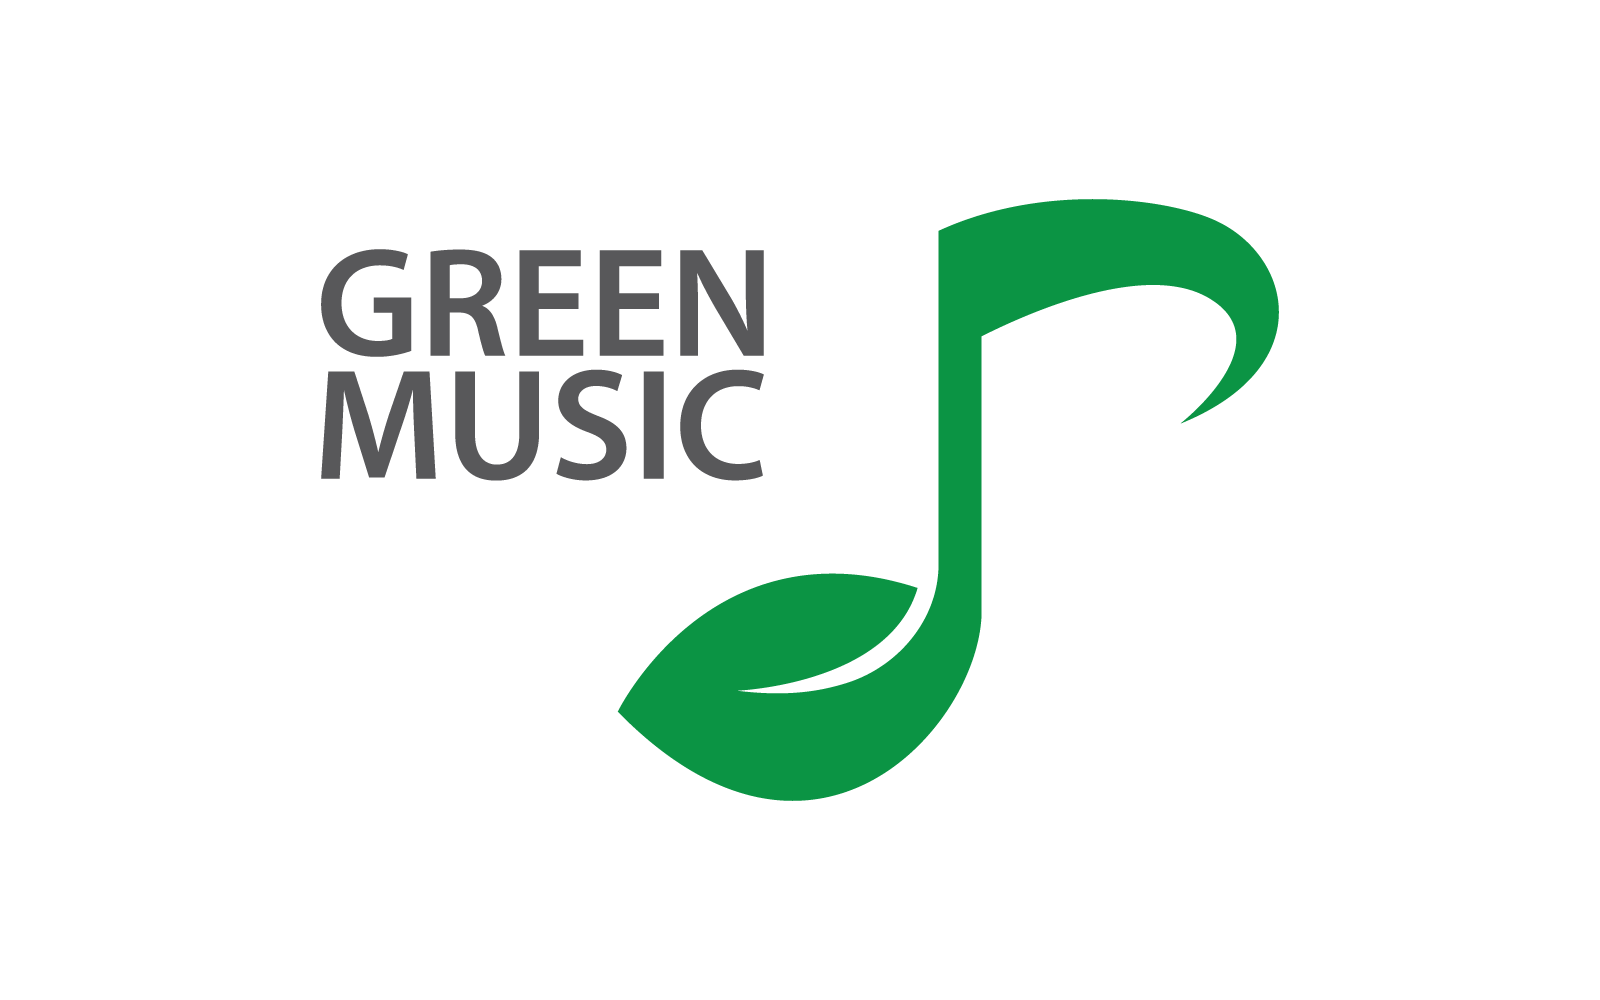 Leaf & Music logo illustration vector design